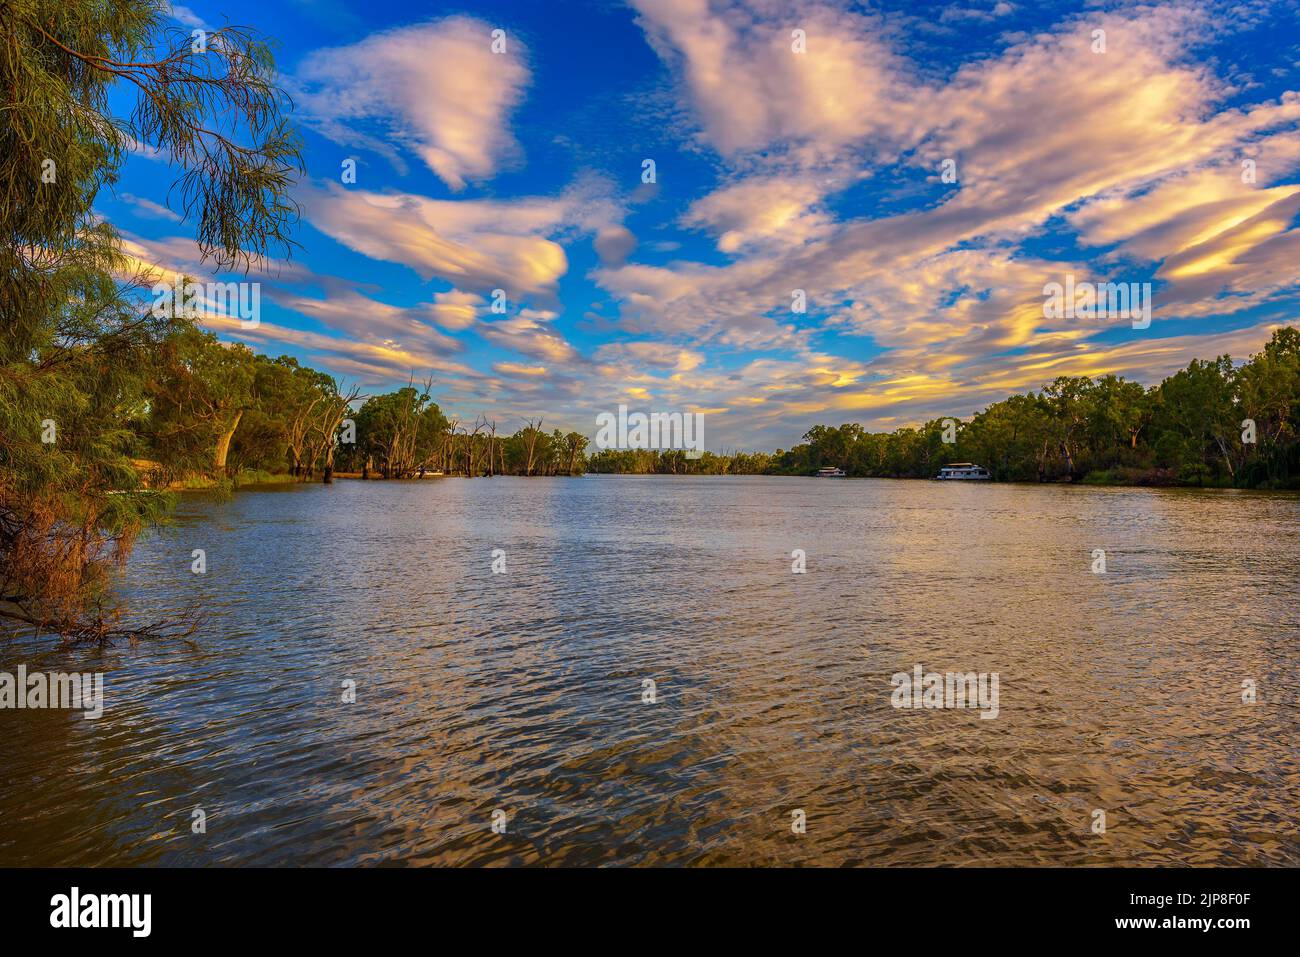 Sunset over Murray river in Mildura, Australia Stock Photo